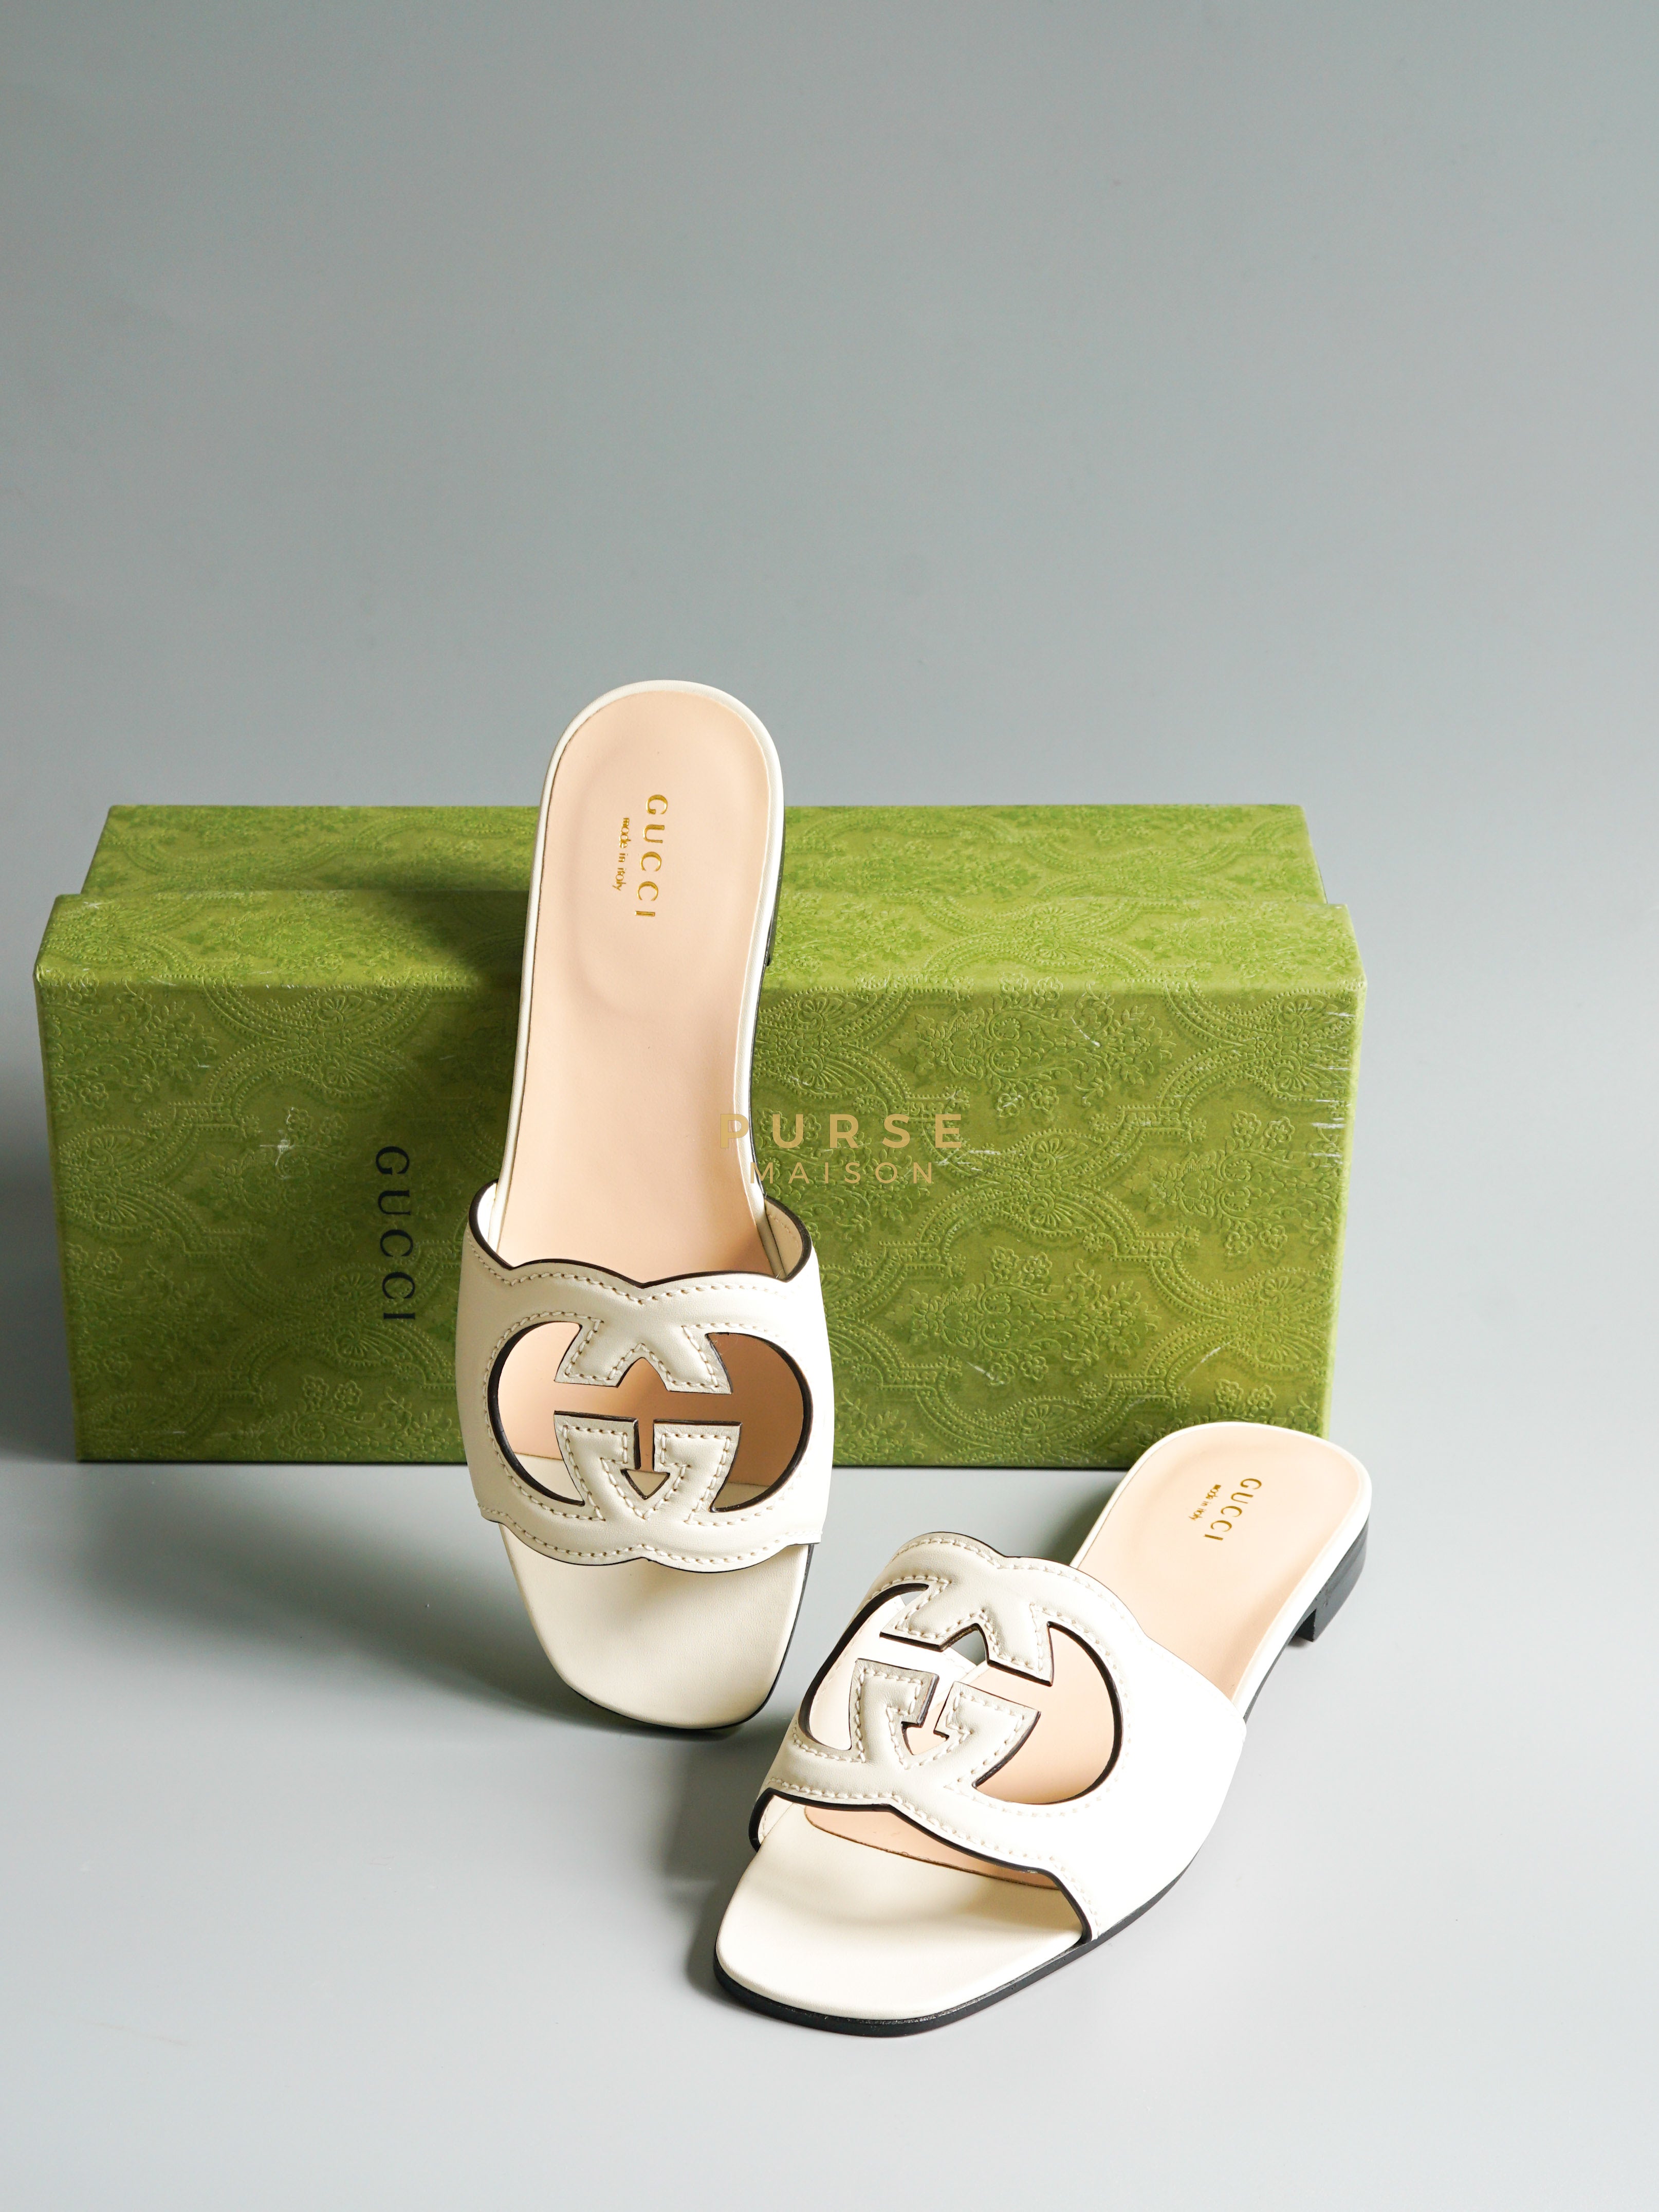 Interlocking G Cut-Out Slide Sandals (Size 37.5EU, 24.5cm) | Purse Maison Luxury Bags Shop